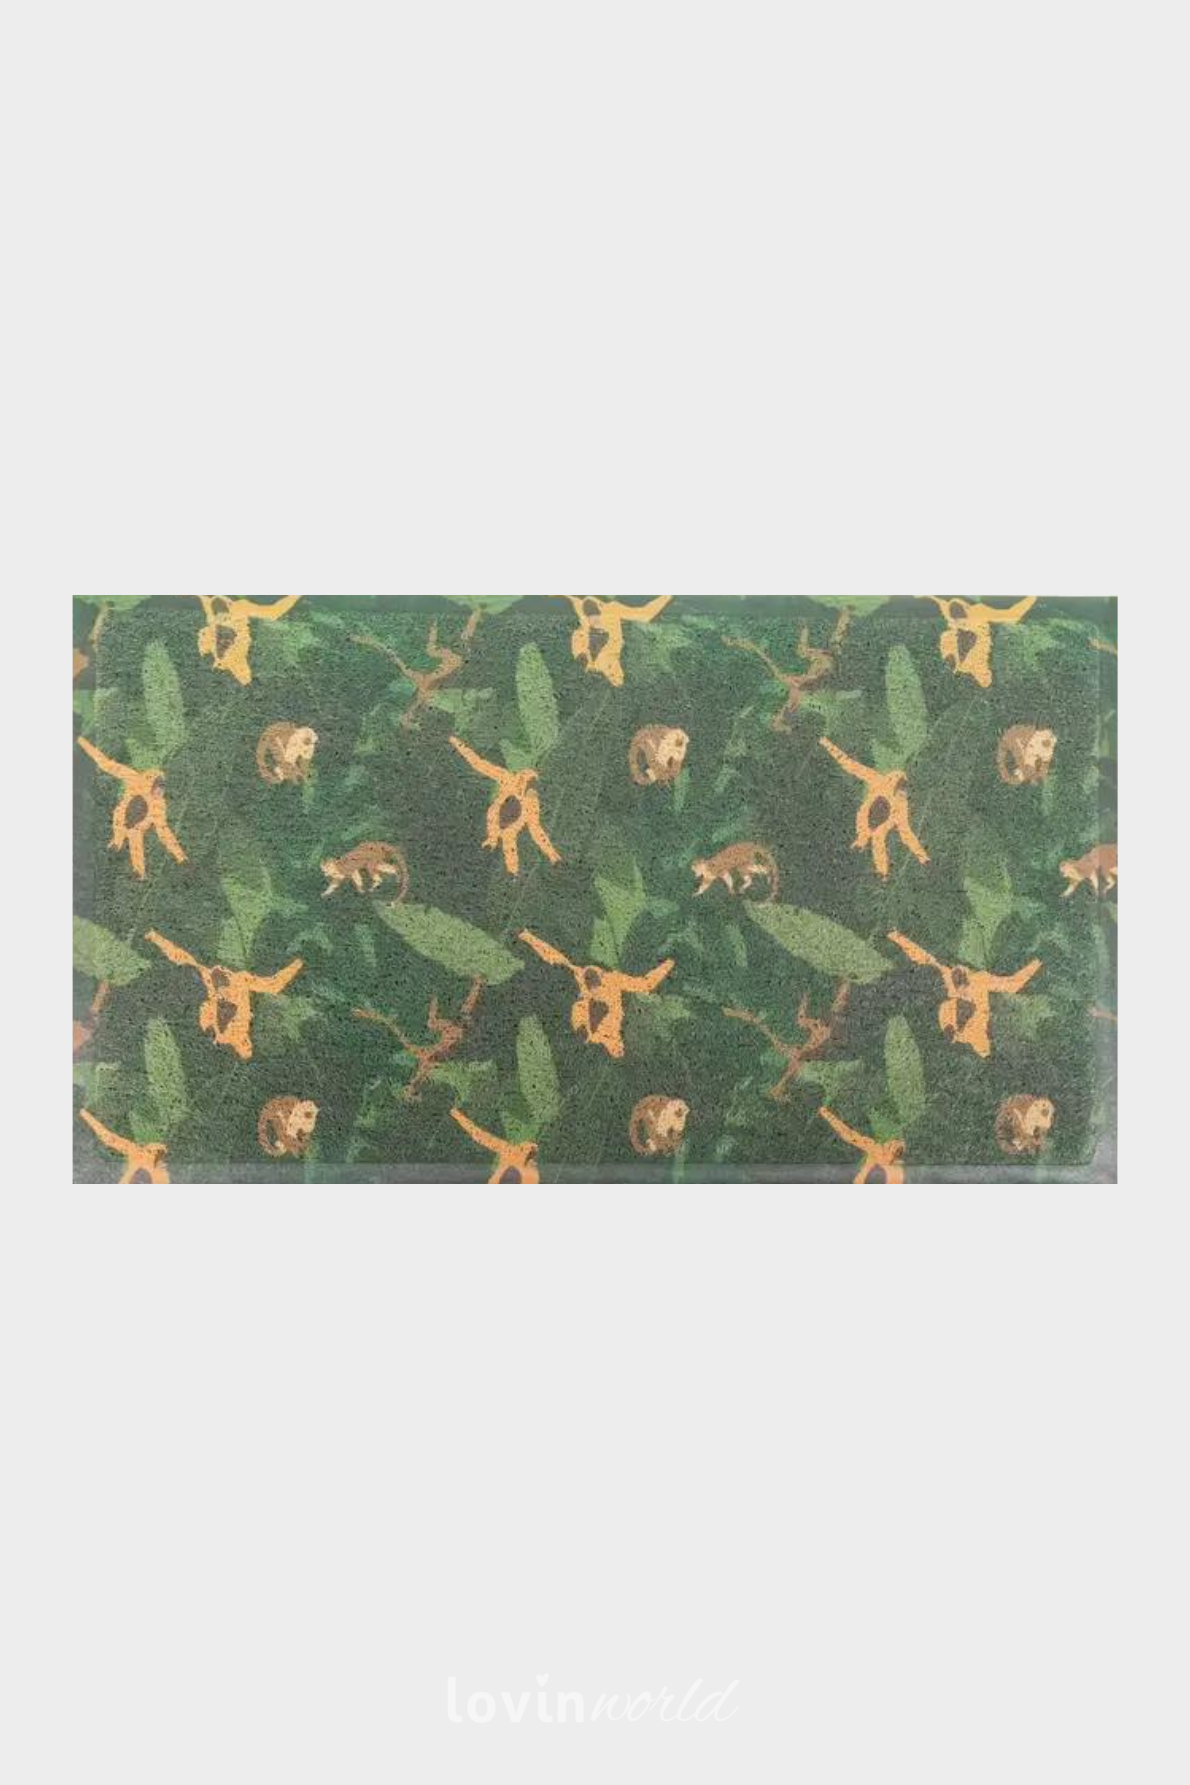 Zerbino particolare Monkey Jungle, in multicolore 40x70 cm.-1